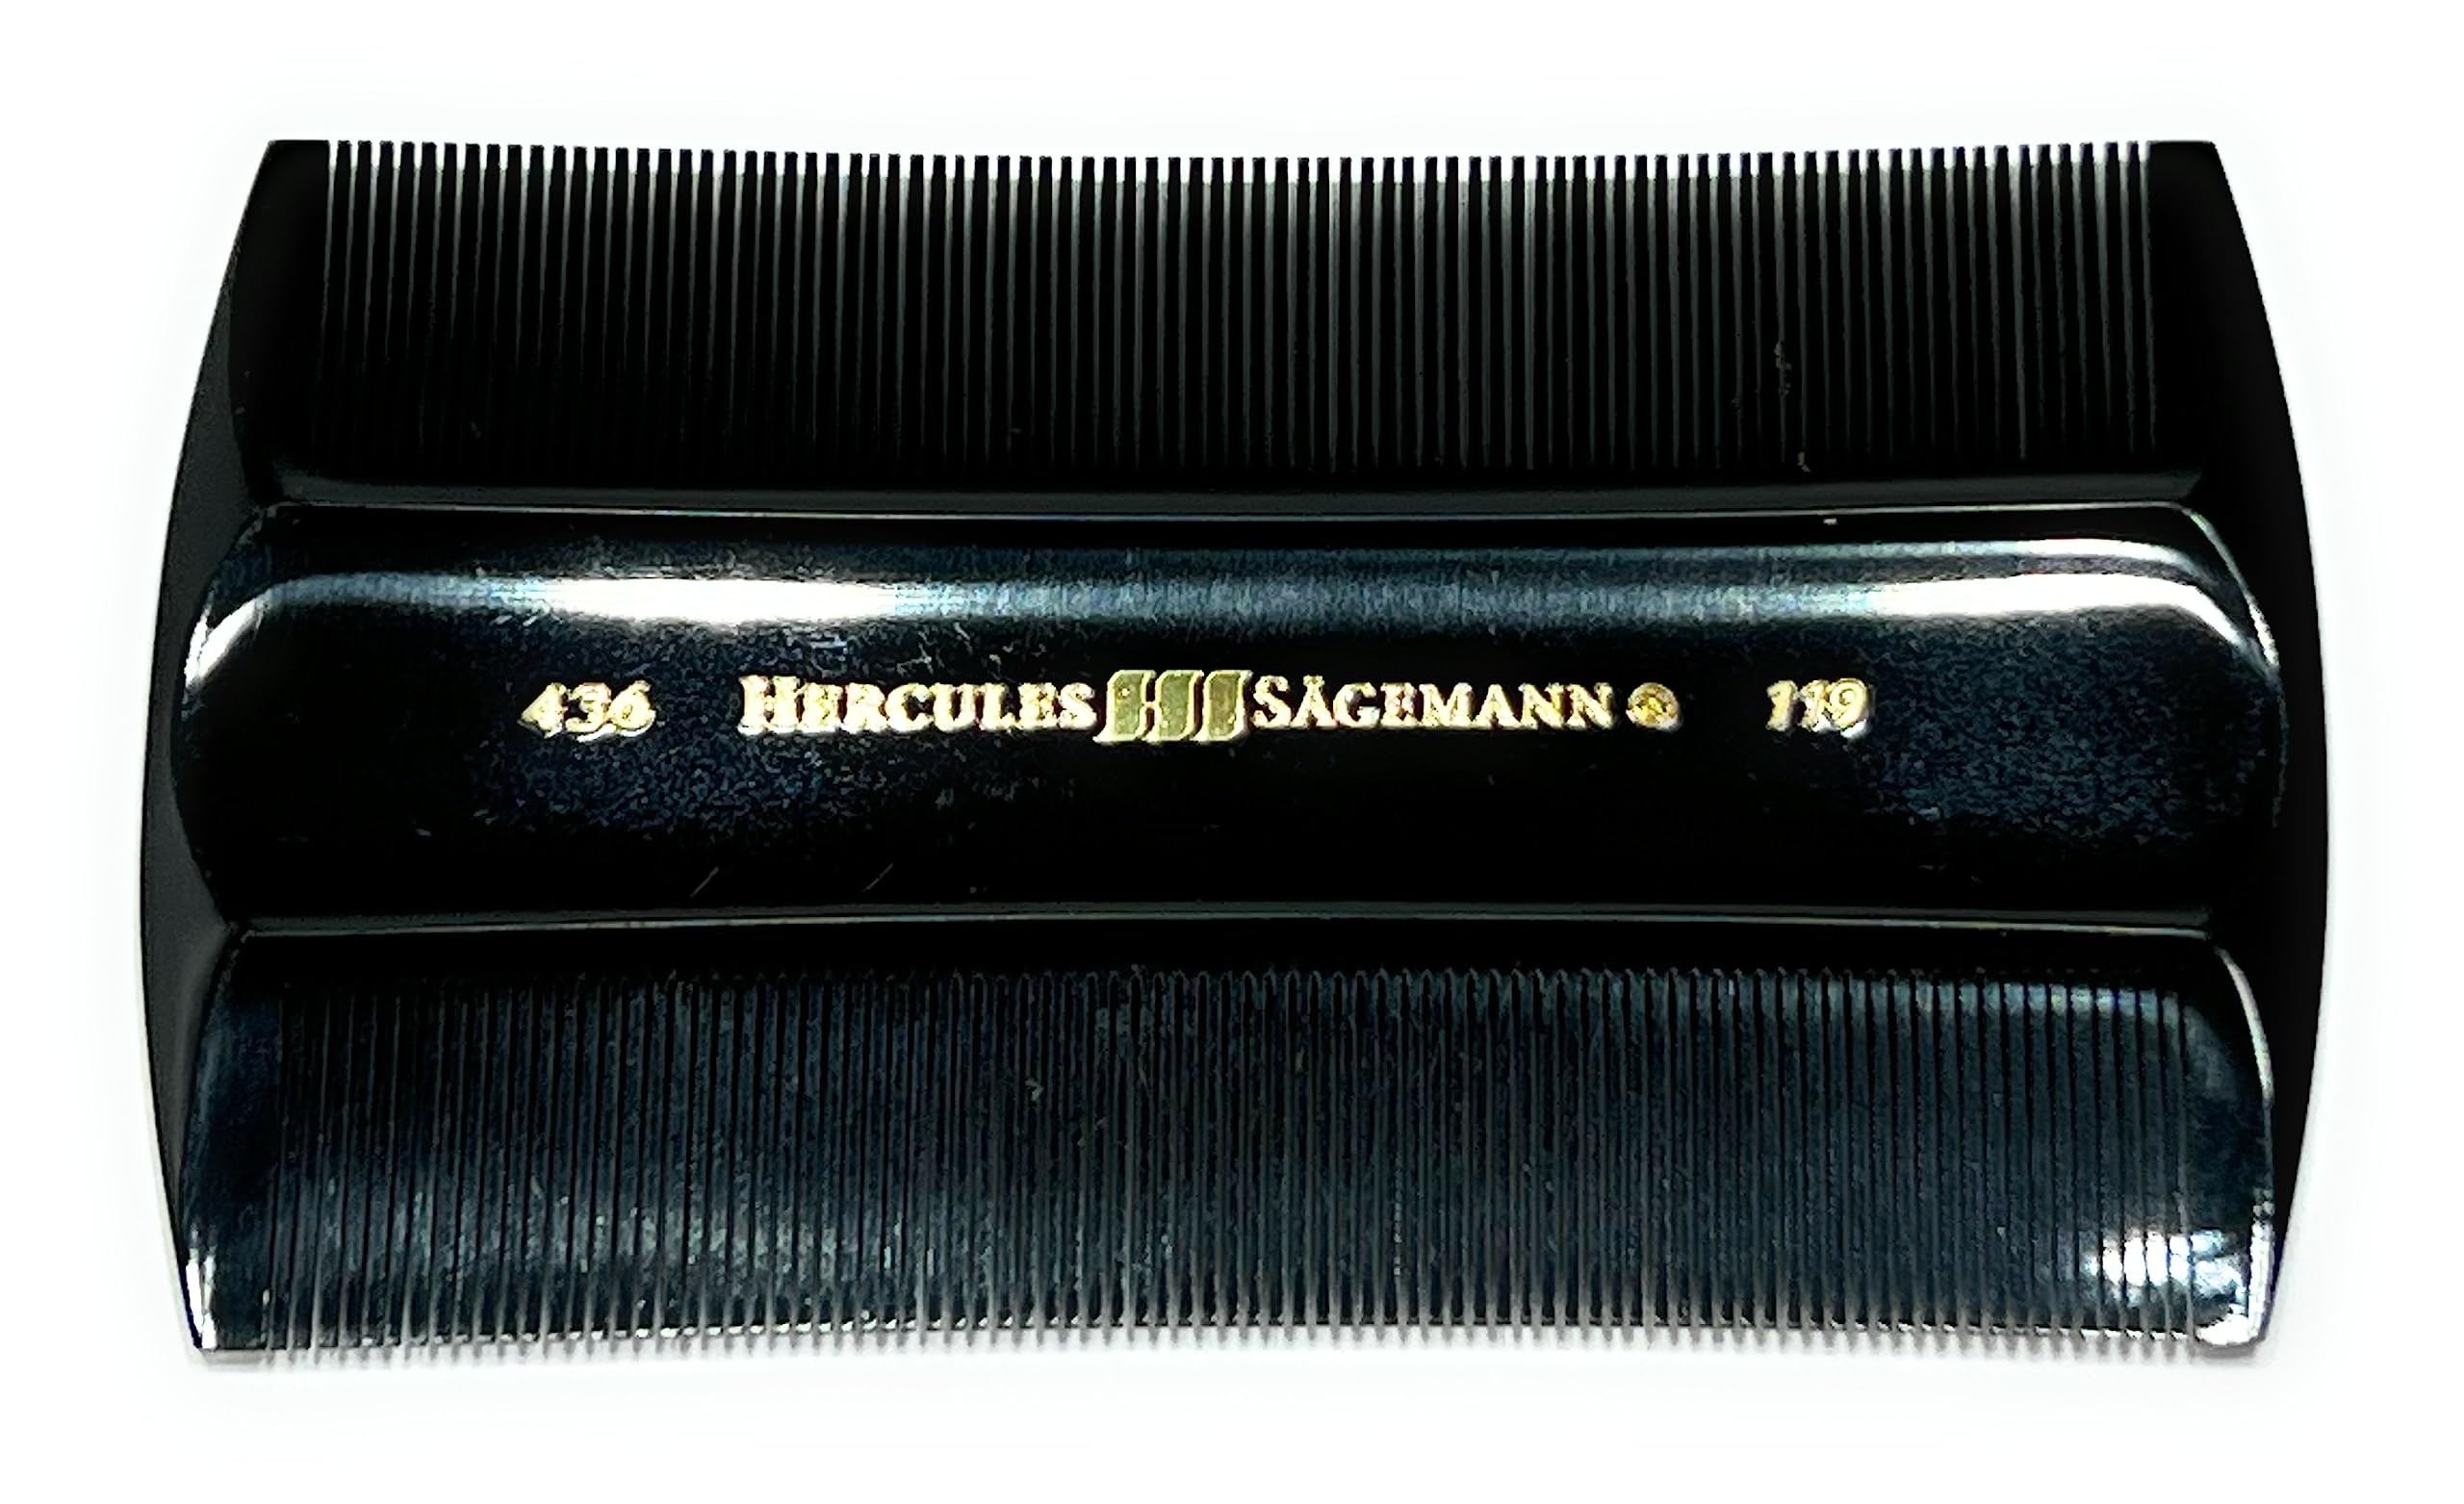 Hercules Sägemann 436 Pflegekamm Staubkamm Nissenkamm Naturkautschuk Schorf-Kamm mit sehr feiner Zahnung auf 2 Seiten Kamm ca. 9 cm (436)